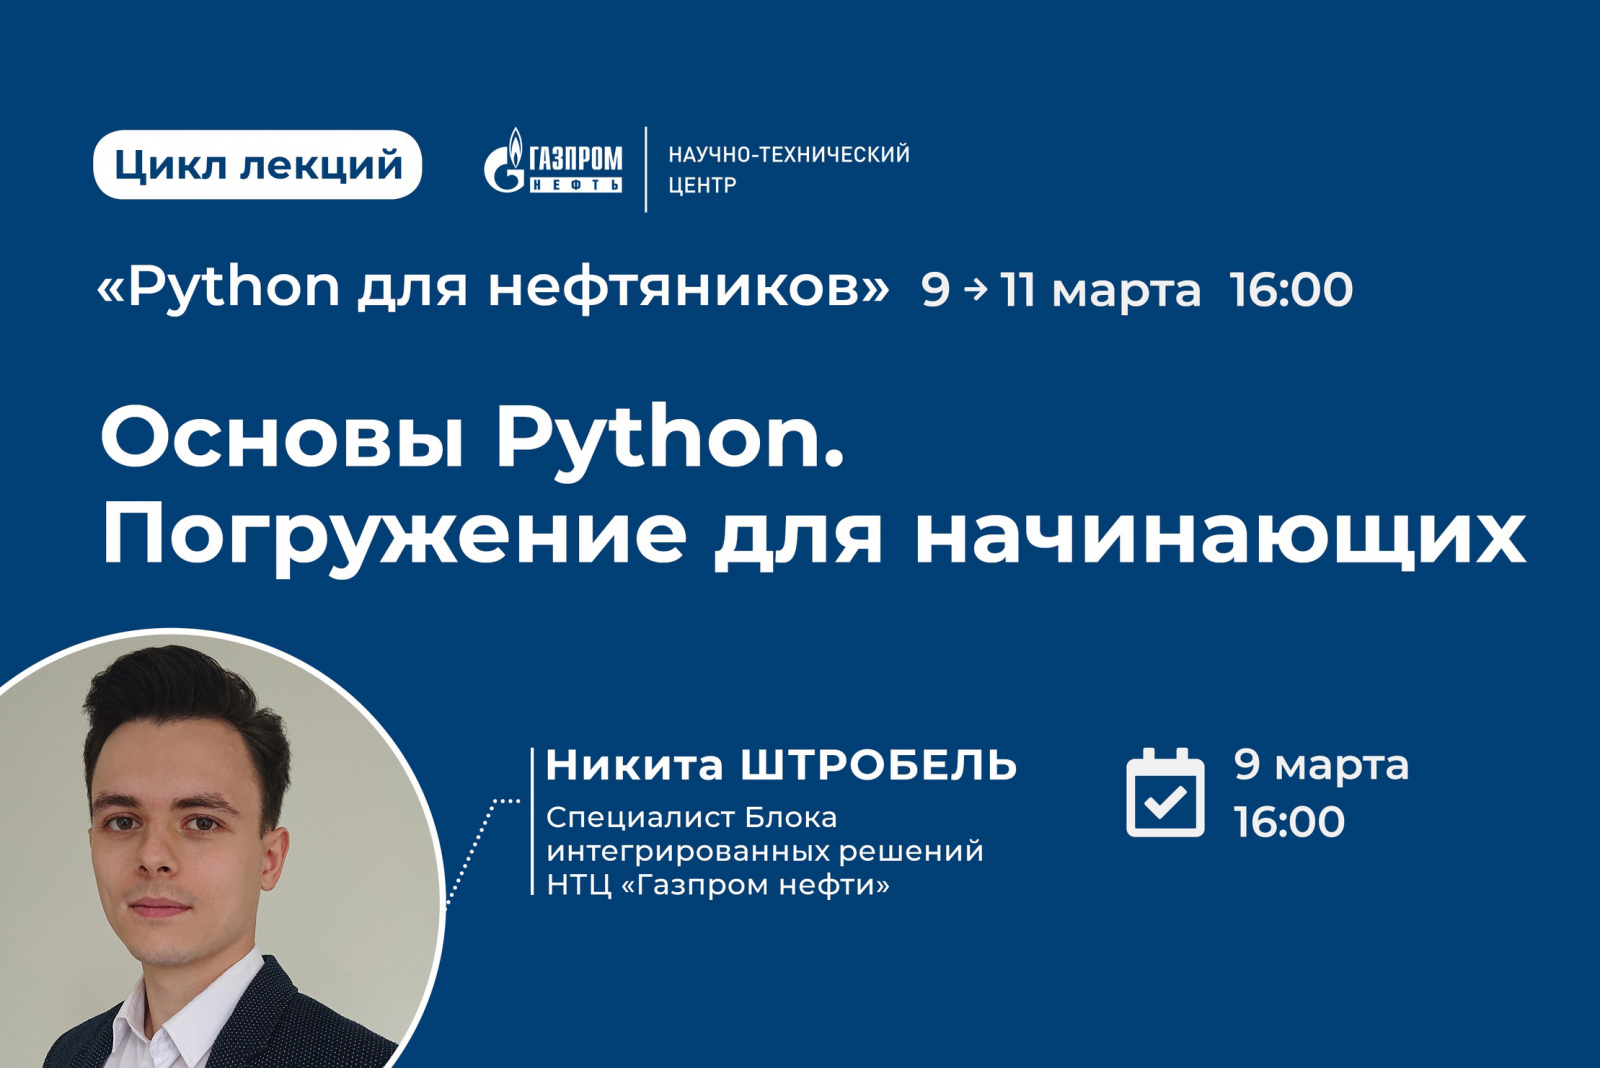 Цикл лекций «Python для нефтяников» от НТЦ «Газпром нефти»